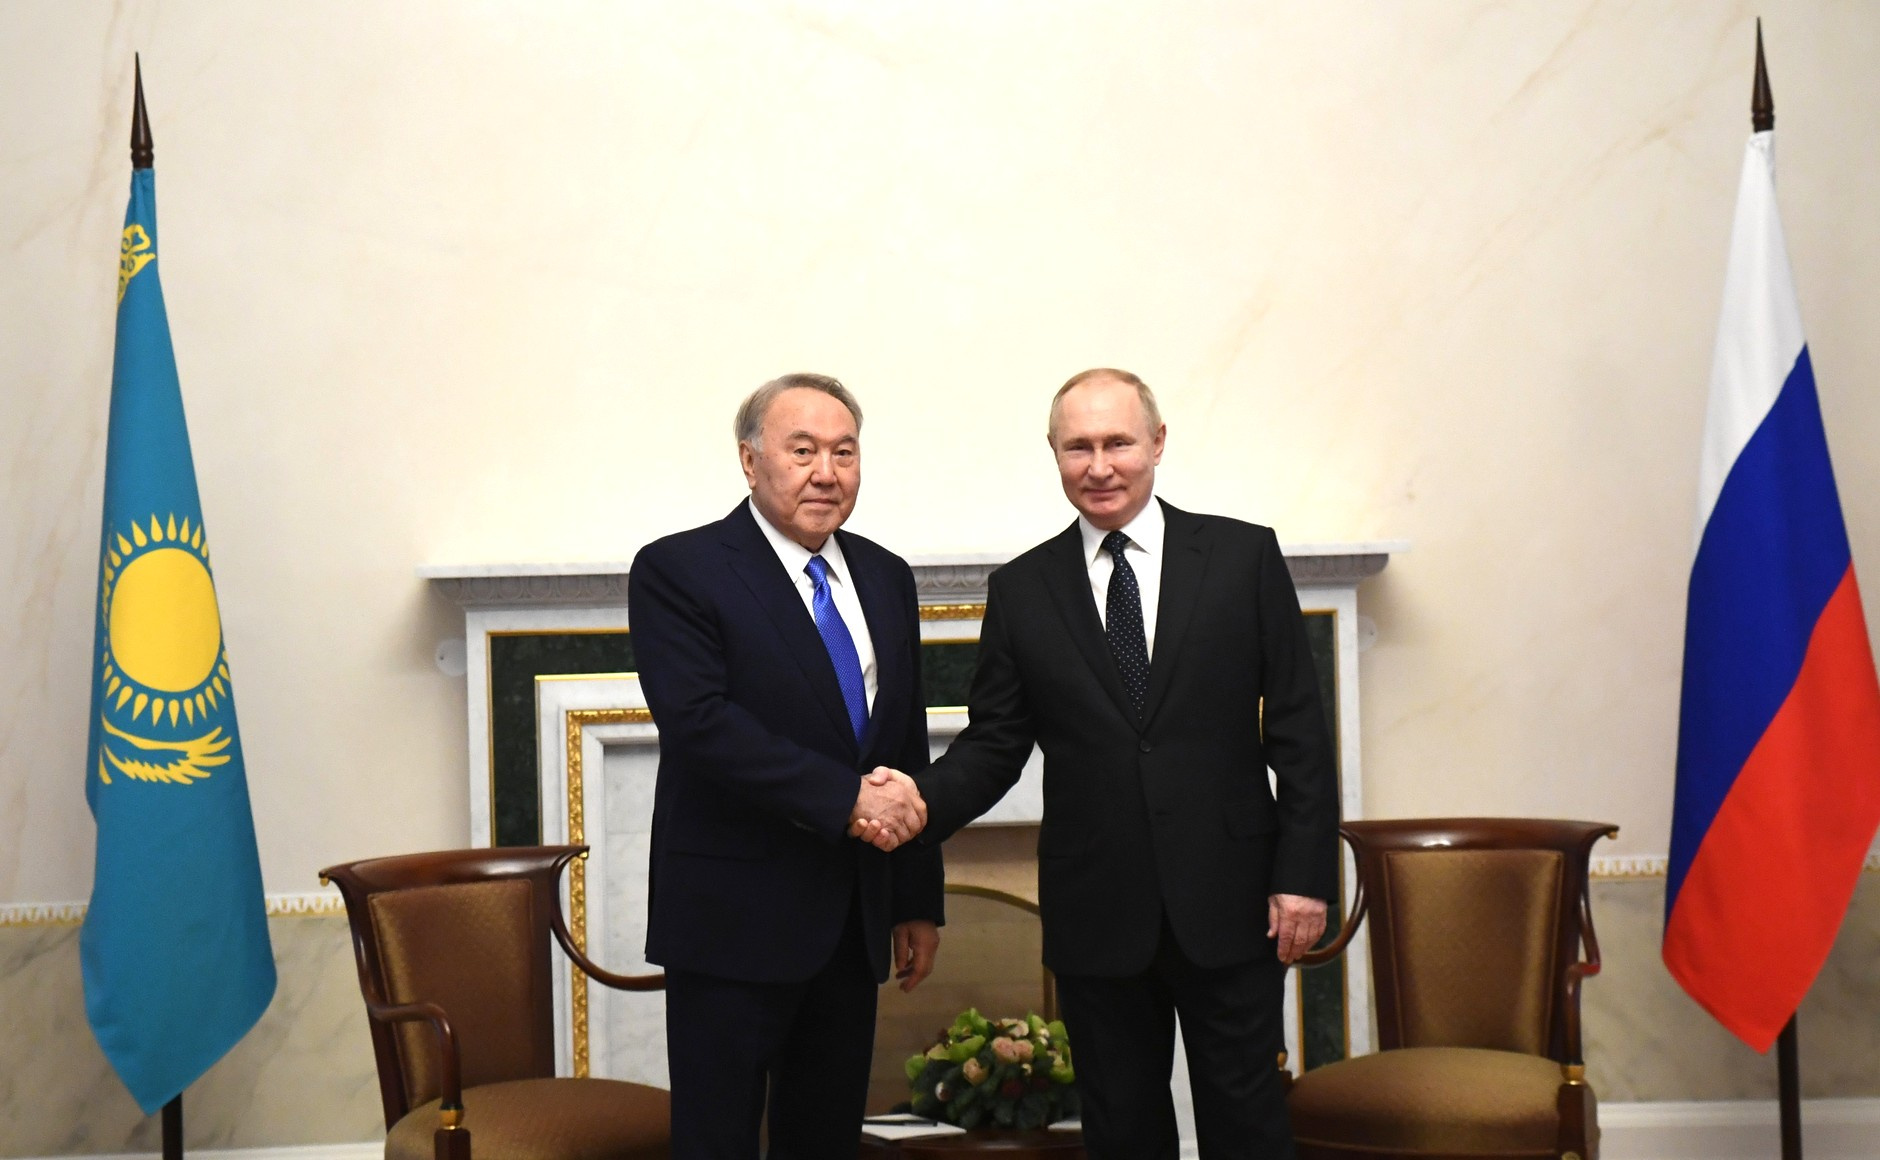 Встреча Владимира Путина с первым президентом Республики Казахстан — лидером нации Нурсултаном Назарбаевым. 28 декабря 2021 года, Санкт-Петербург.